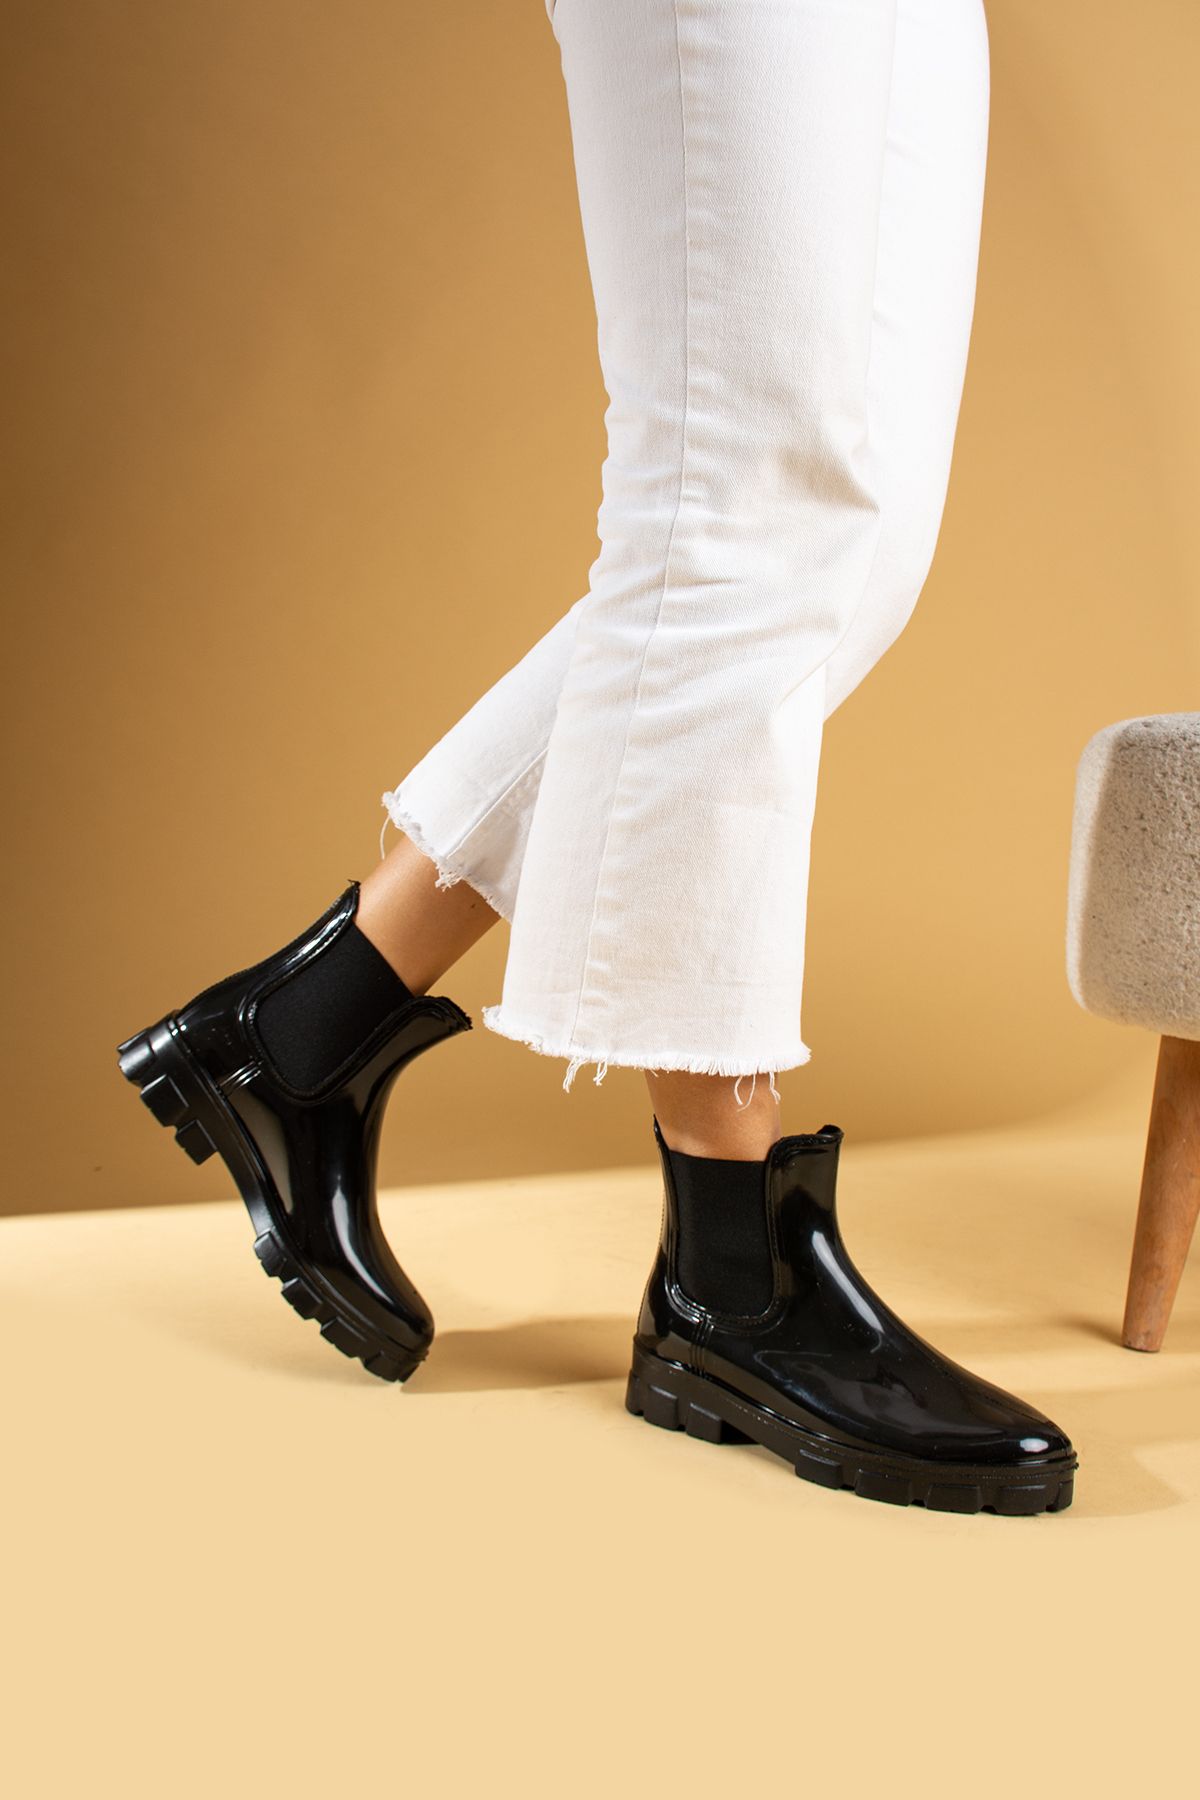 Pembe Potin Kadın Siyah Lastikli Yağmur Çizmesi Kadın Günlük Ayakkabı Kadın Su Geçirmez Yağmur Botu